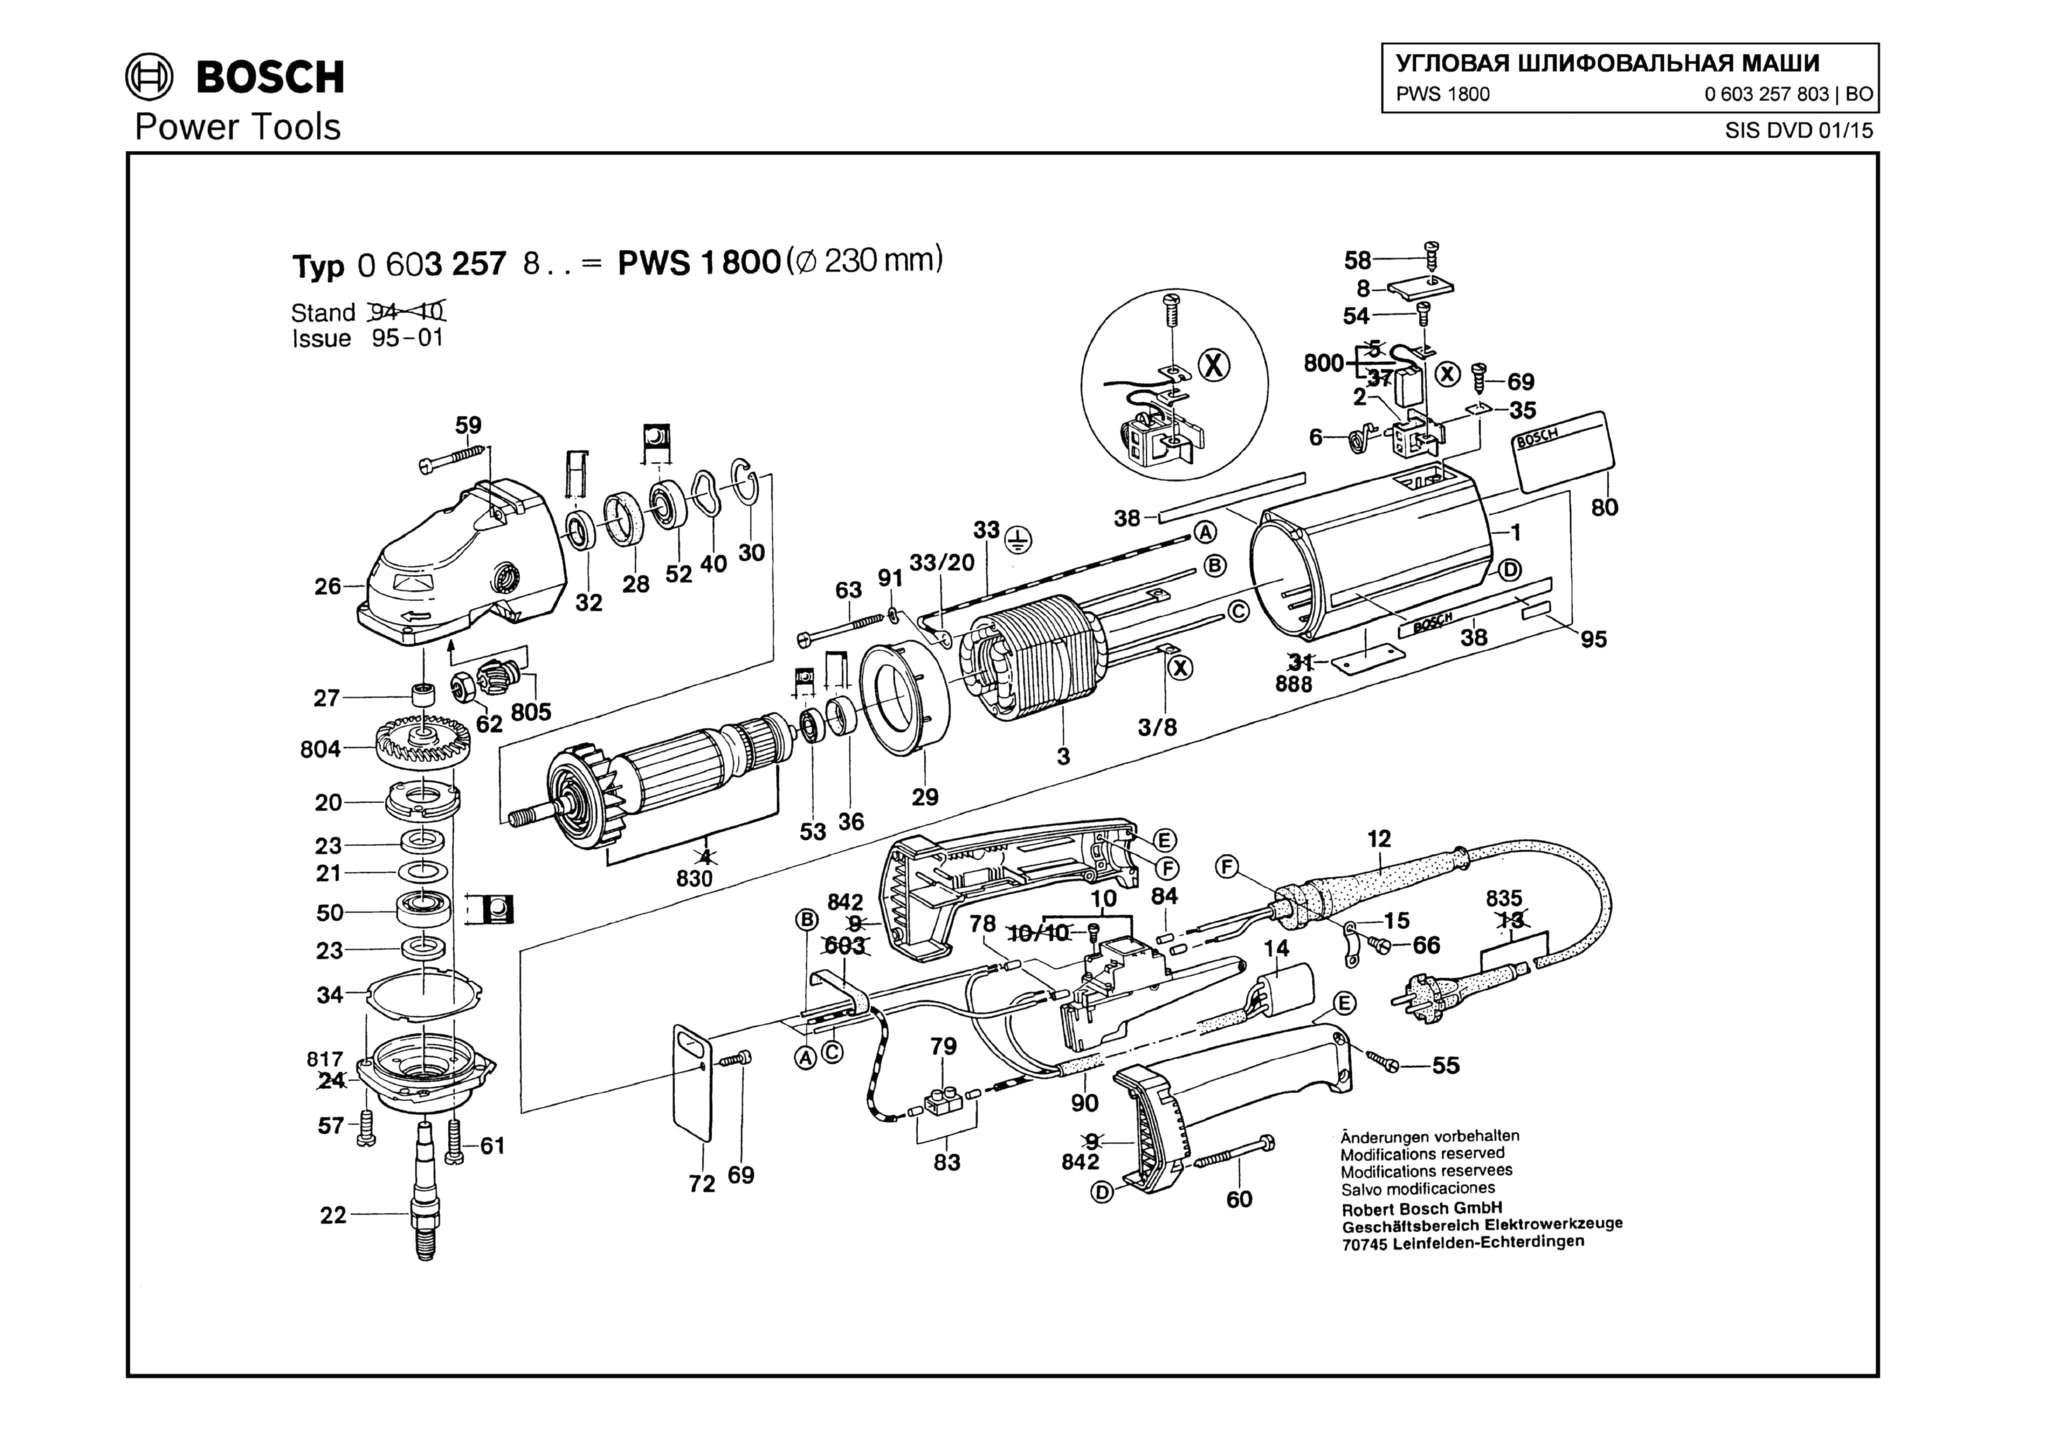 Запчасти, схема и деталировка Bosch PWS 1800 (ТИП 0603257803)